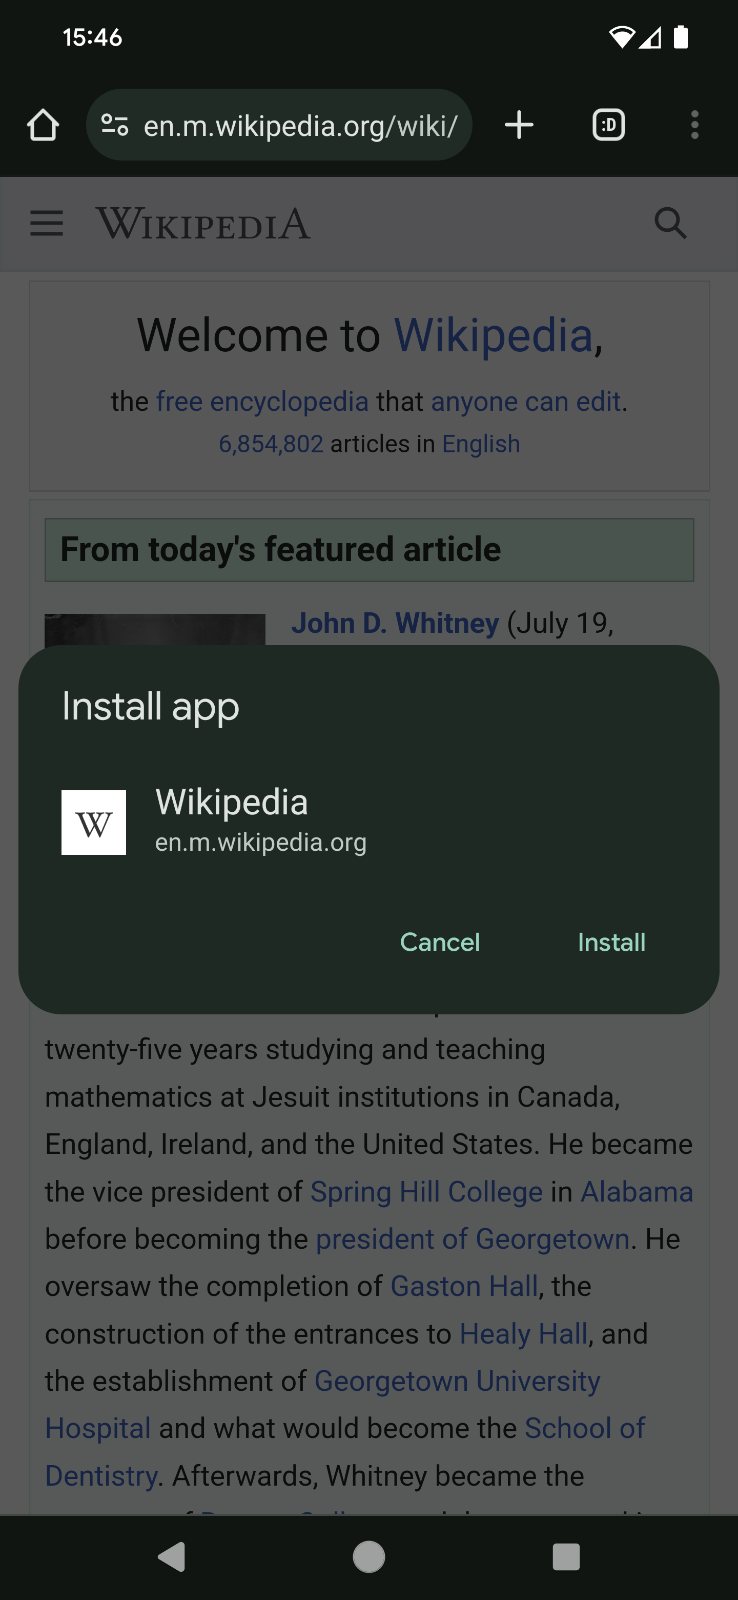 维基百科网站上的“Install app”对话框。